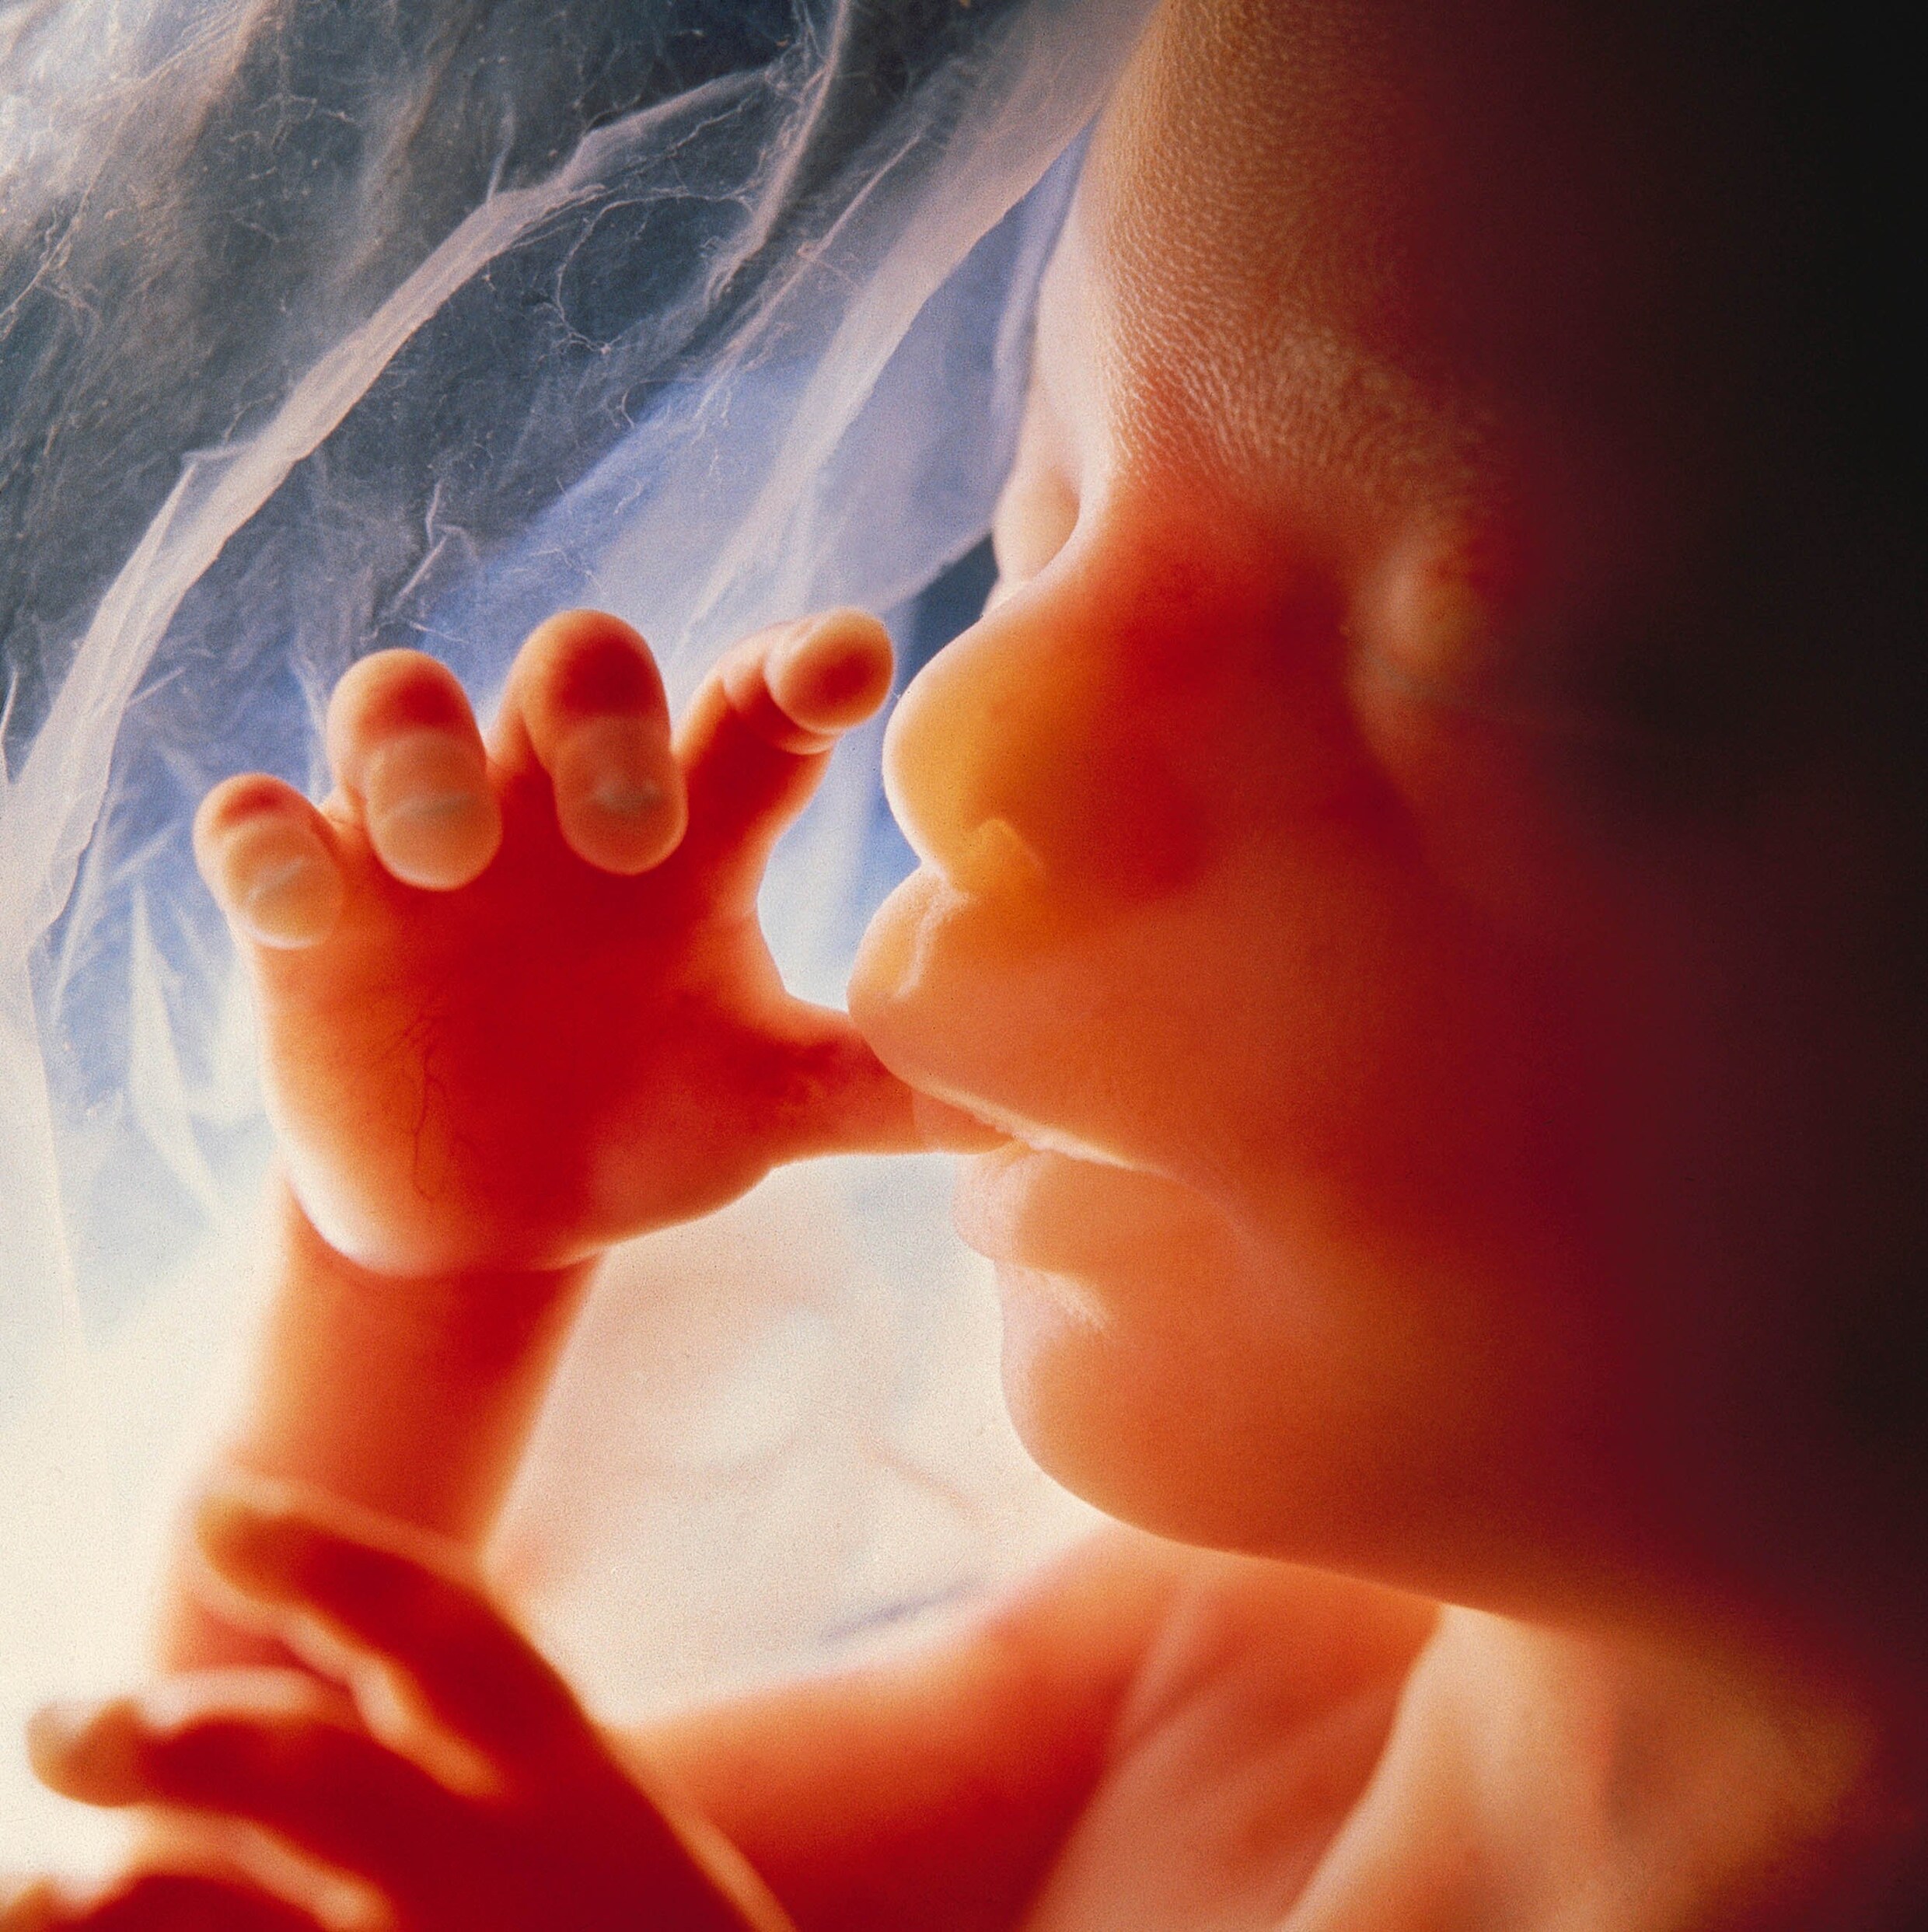 Ethische afwegingen bij uitbreiding van abortus tot 20 weken